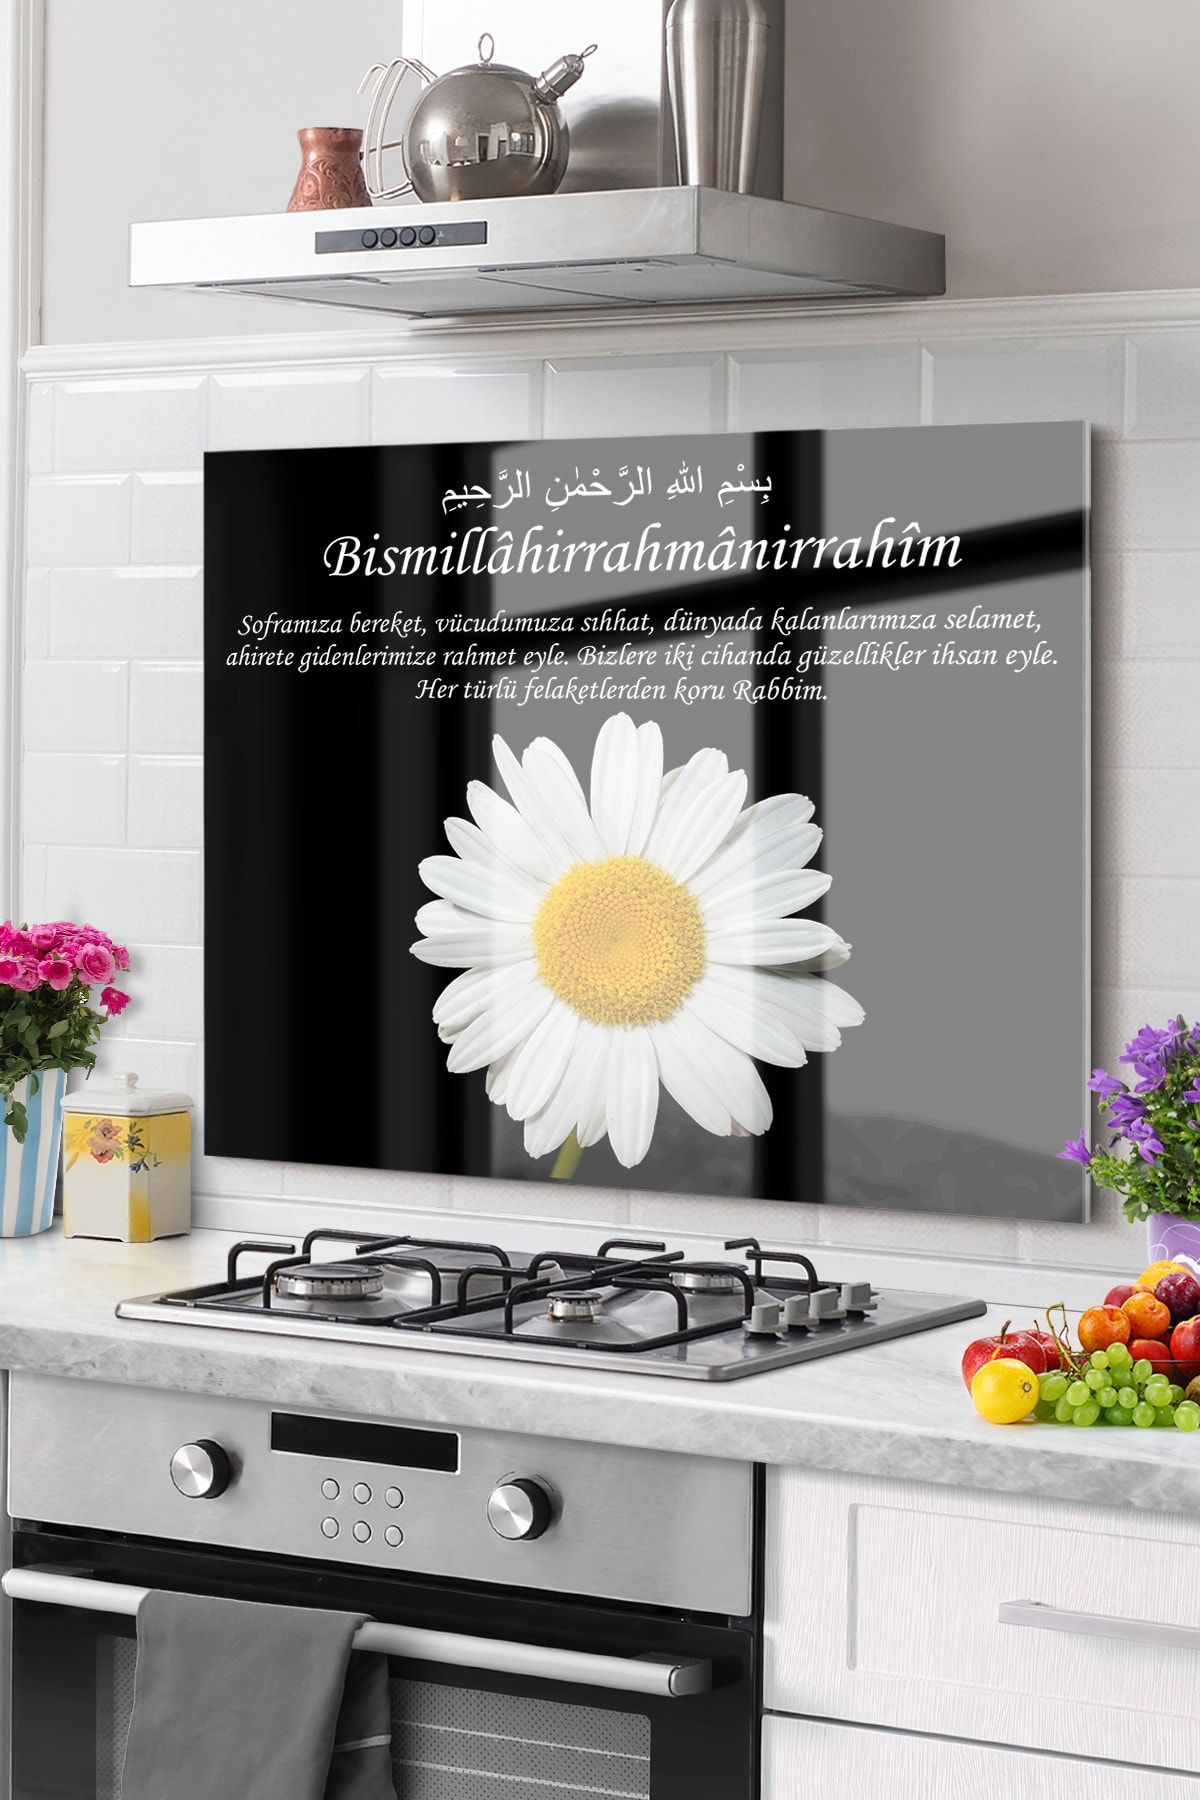 Olinpa Premium Mutfak Cam Ocak Arkası Koruyucu Tezgah Ankastre Arkası Koruyucu 50x60cm | Besmele Dua